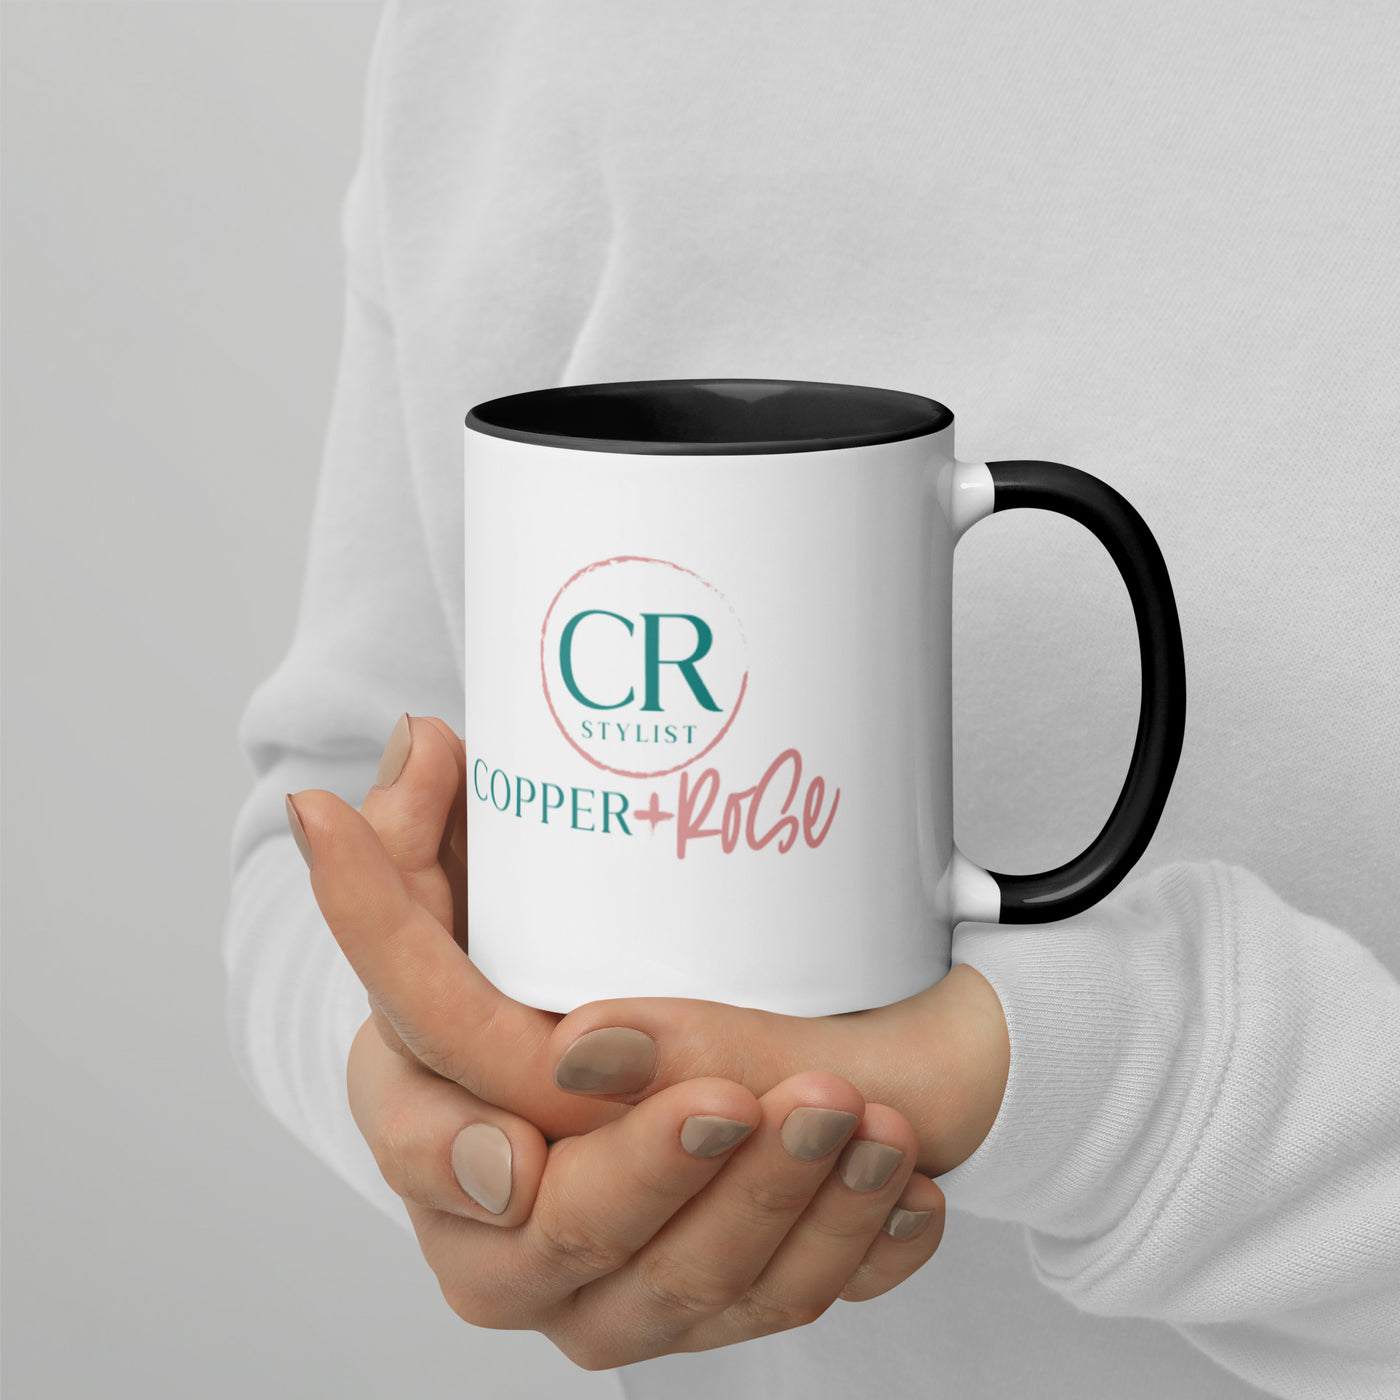 CRB Ceramic Mug